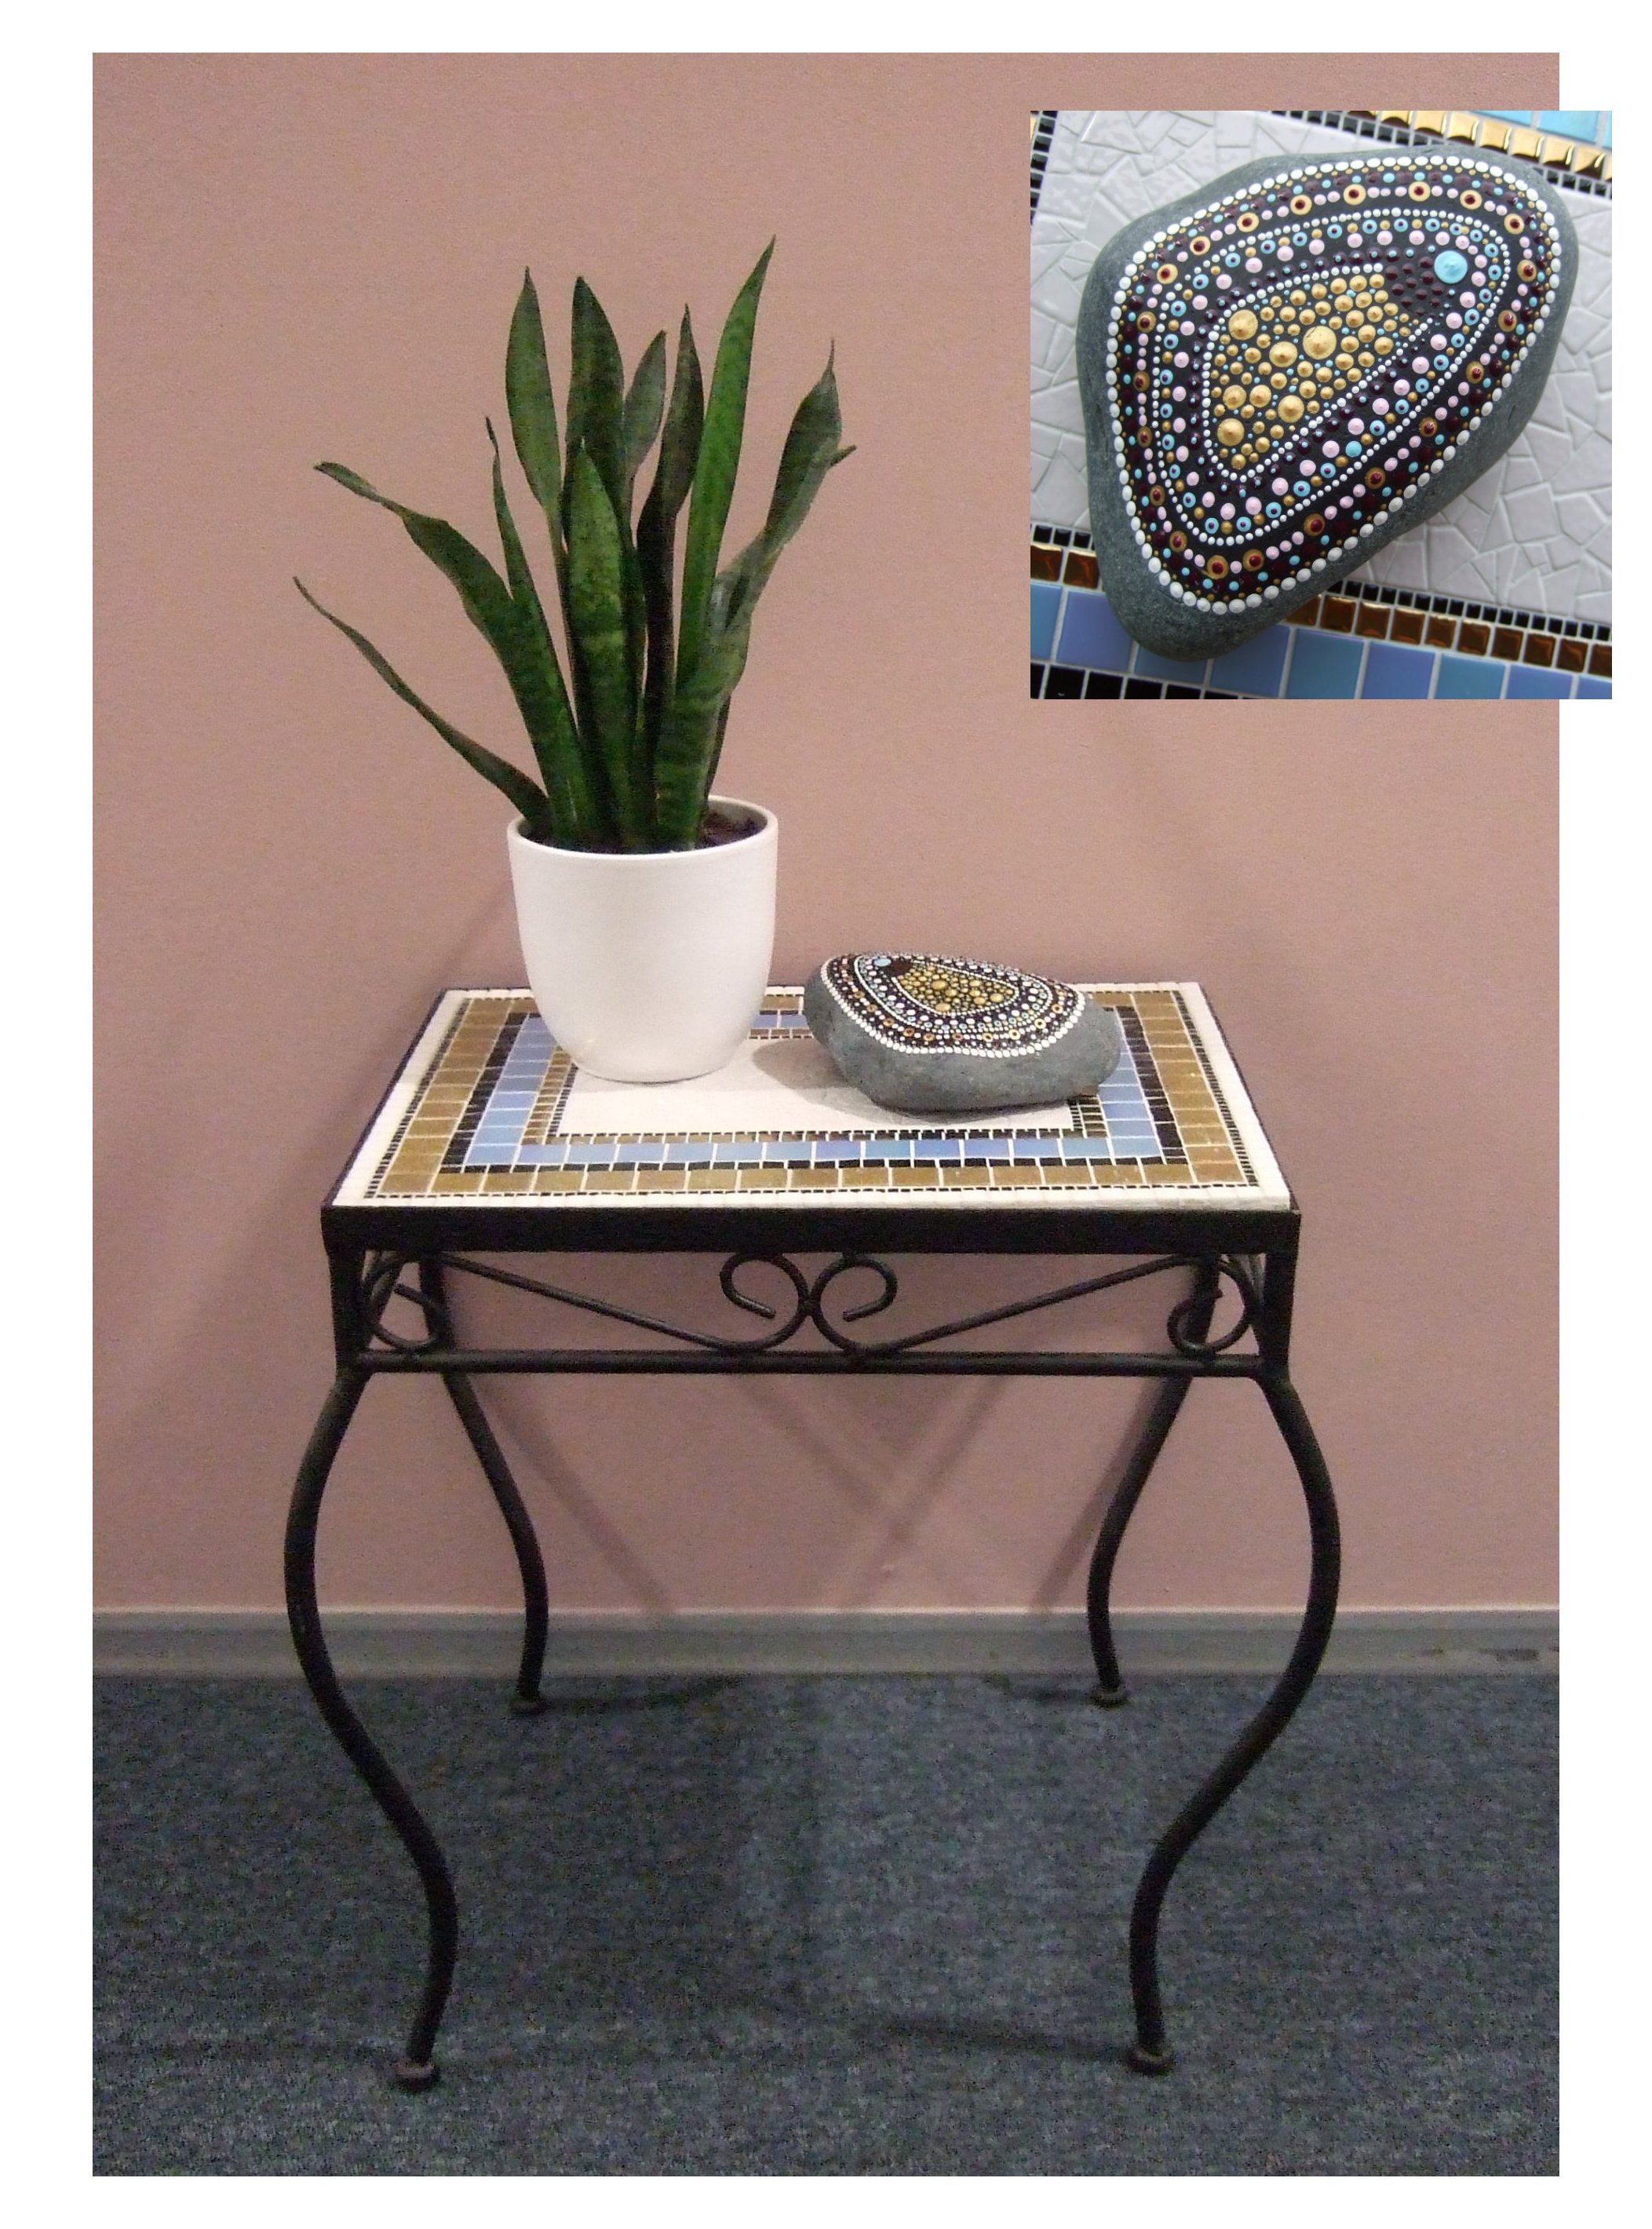 Een klein mozaiektafeltje met wit, lichtblauw en goud glasmozaiek. Op de tafel ligt een kei die is gedecoreerd met stippen in dezelfde kleuren als het tafeltje. Daarnaast staat een klein plantje in een wit potje.